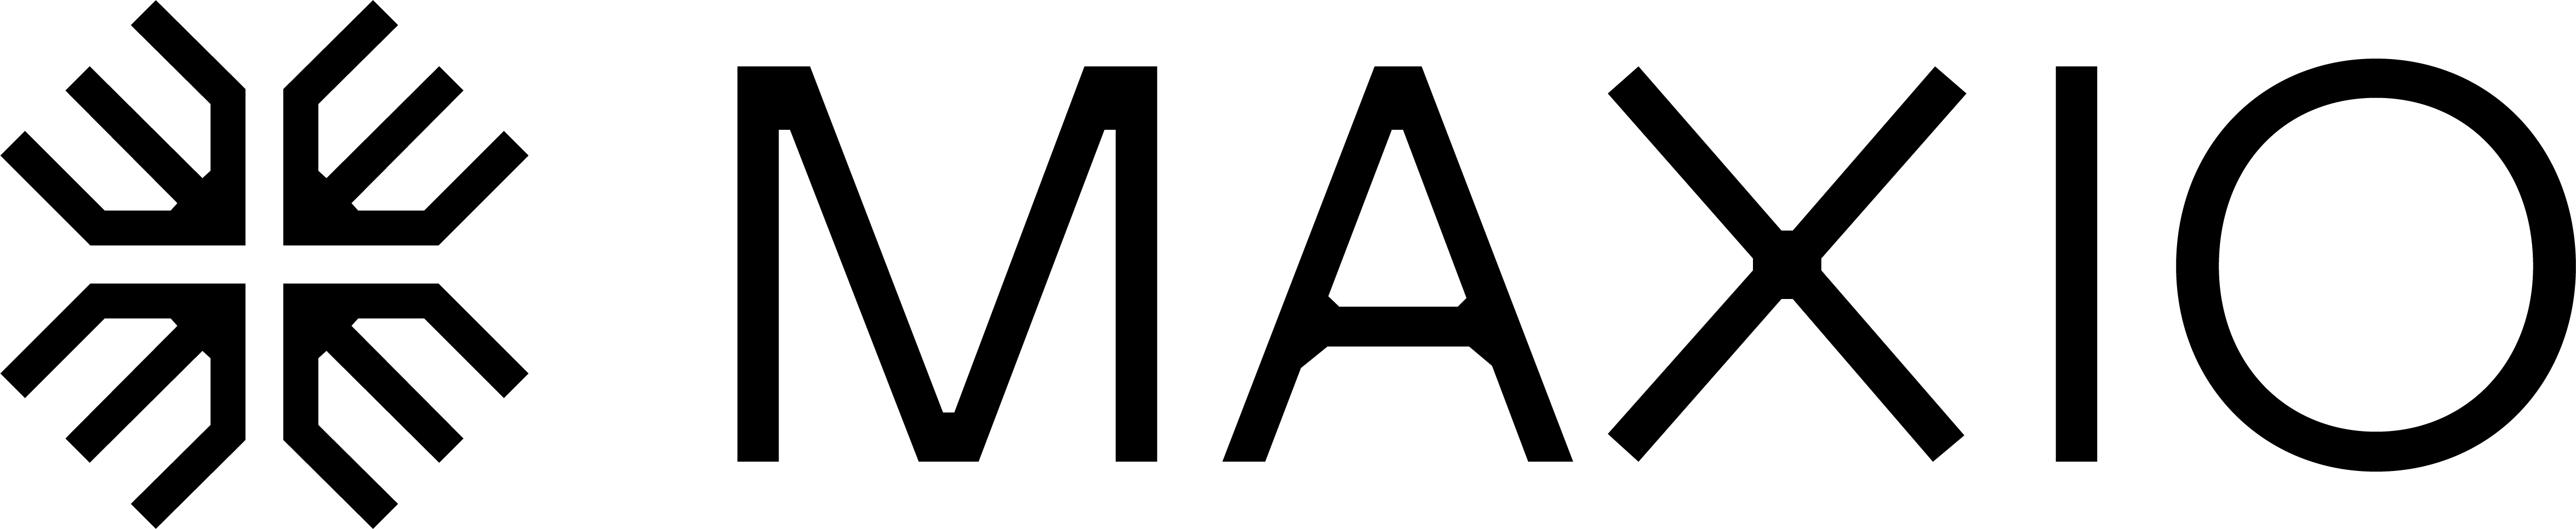 Maxio logo